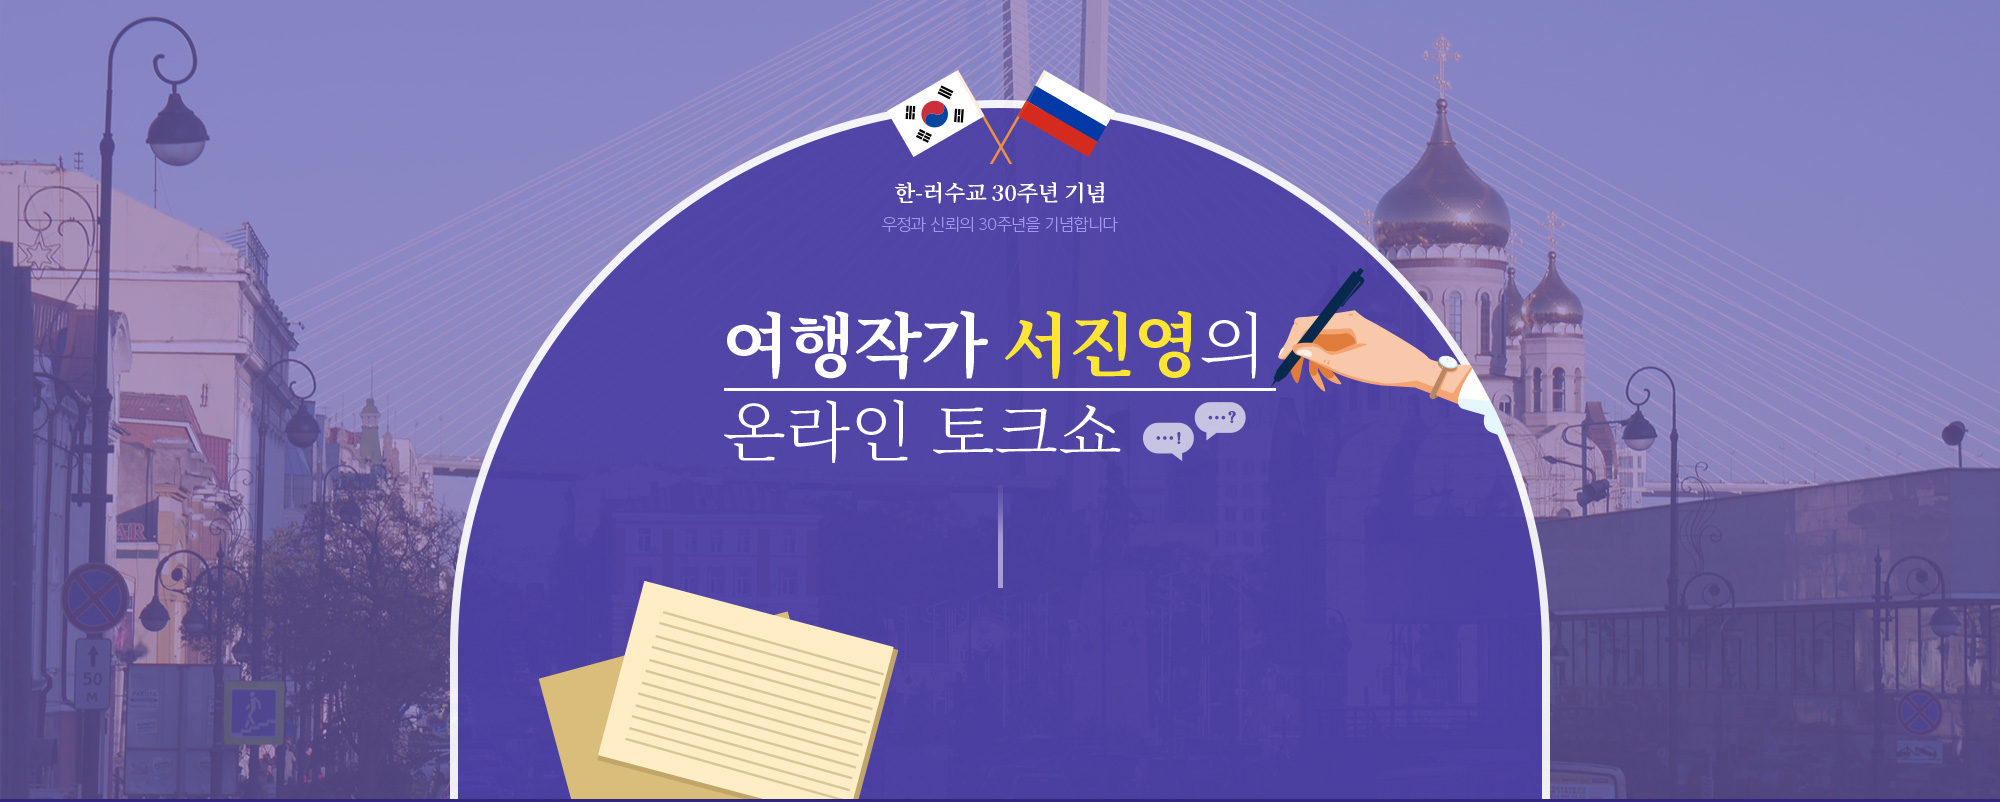 여행작가 서진영의 온라인 토크쇼